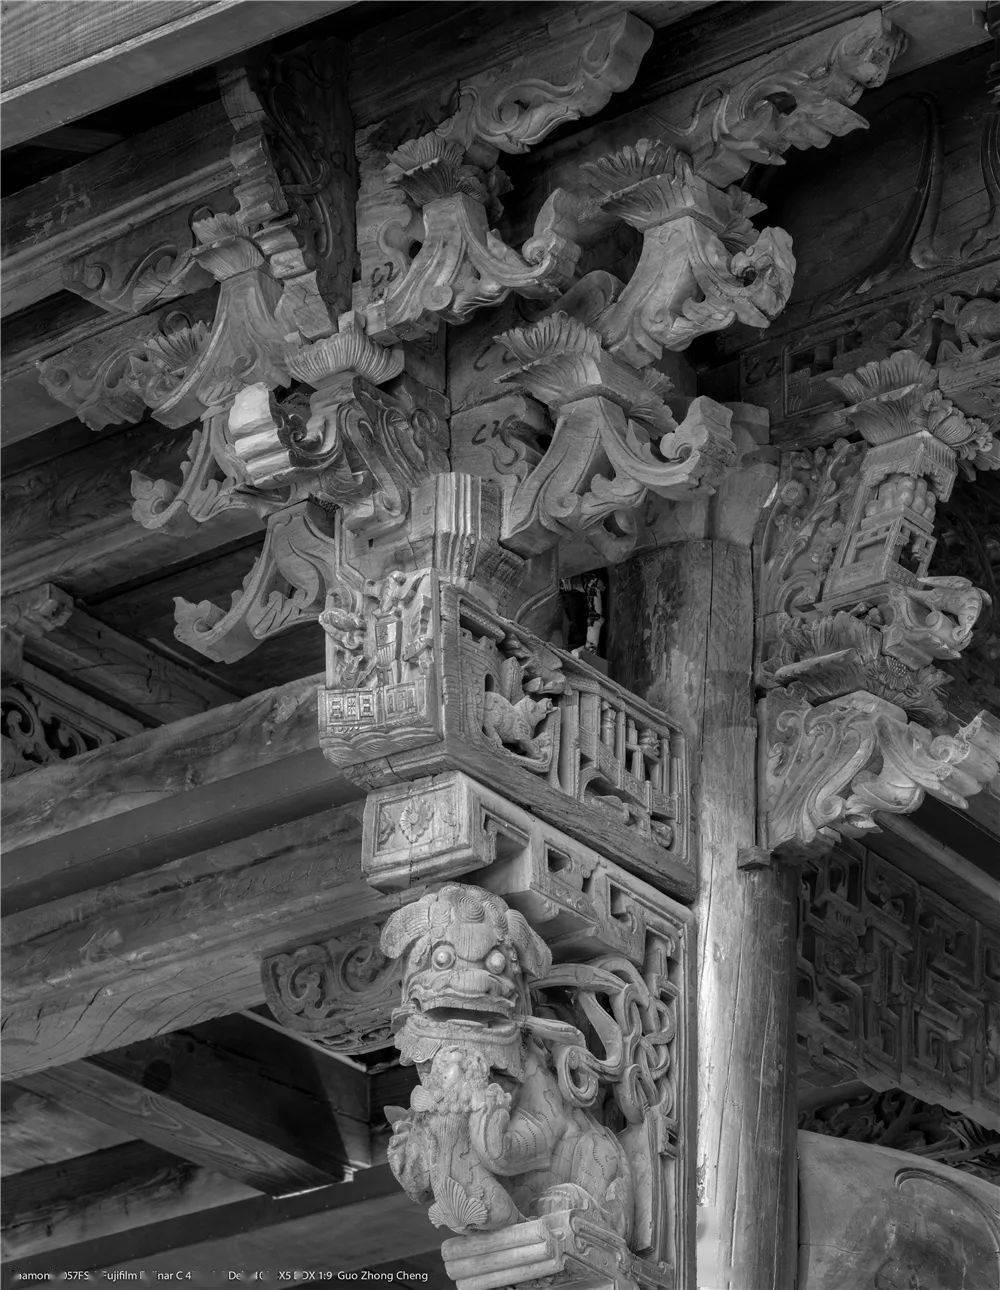 视觉影像津门网郭忠诚大画幅拍摄中国古代建筑木雕